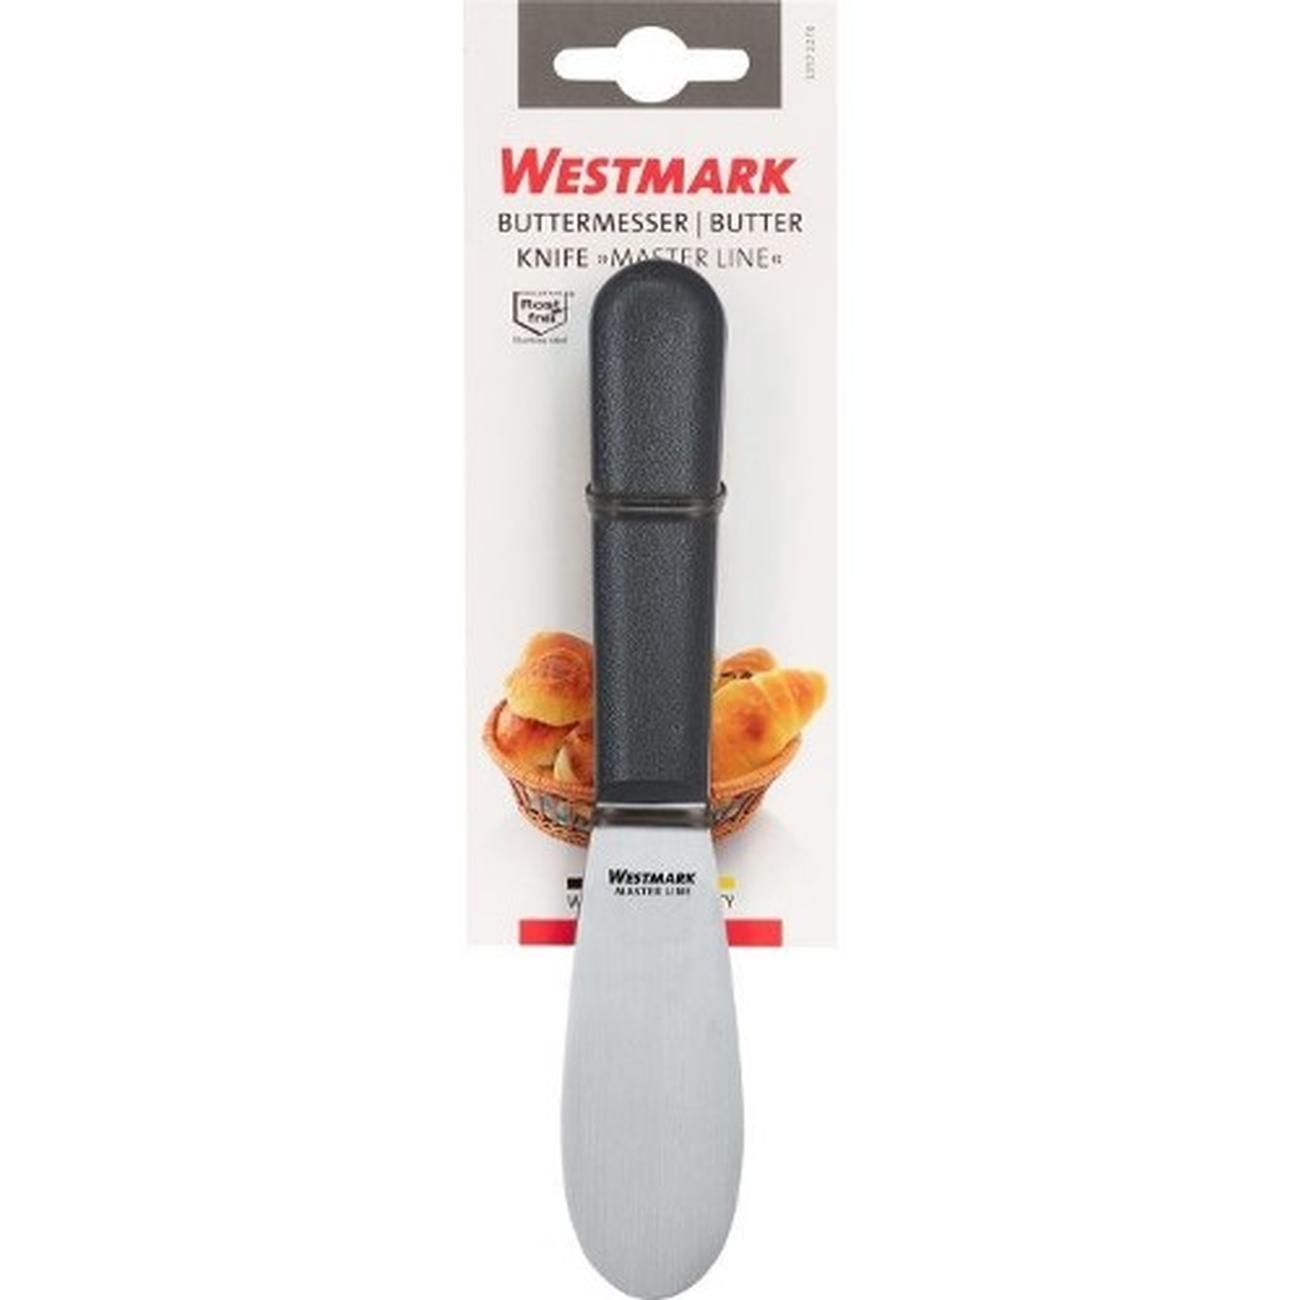 Westmark Butter Knife Master Line